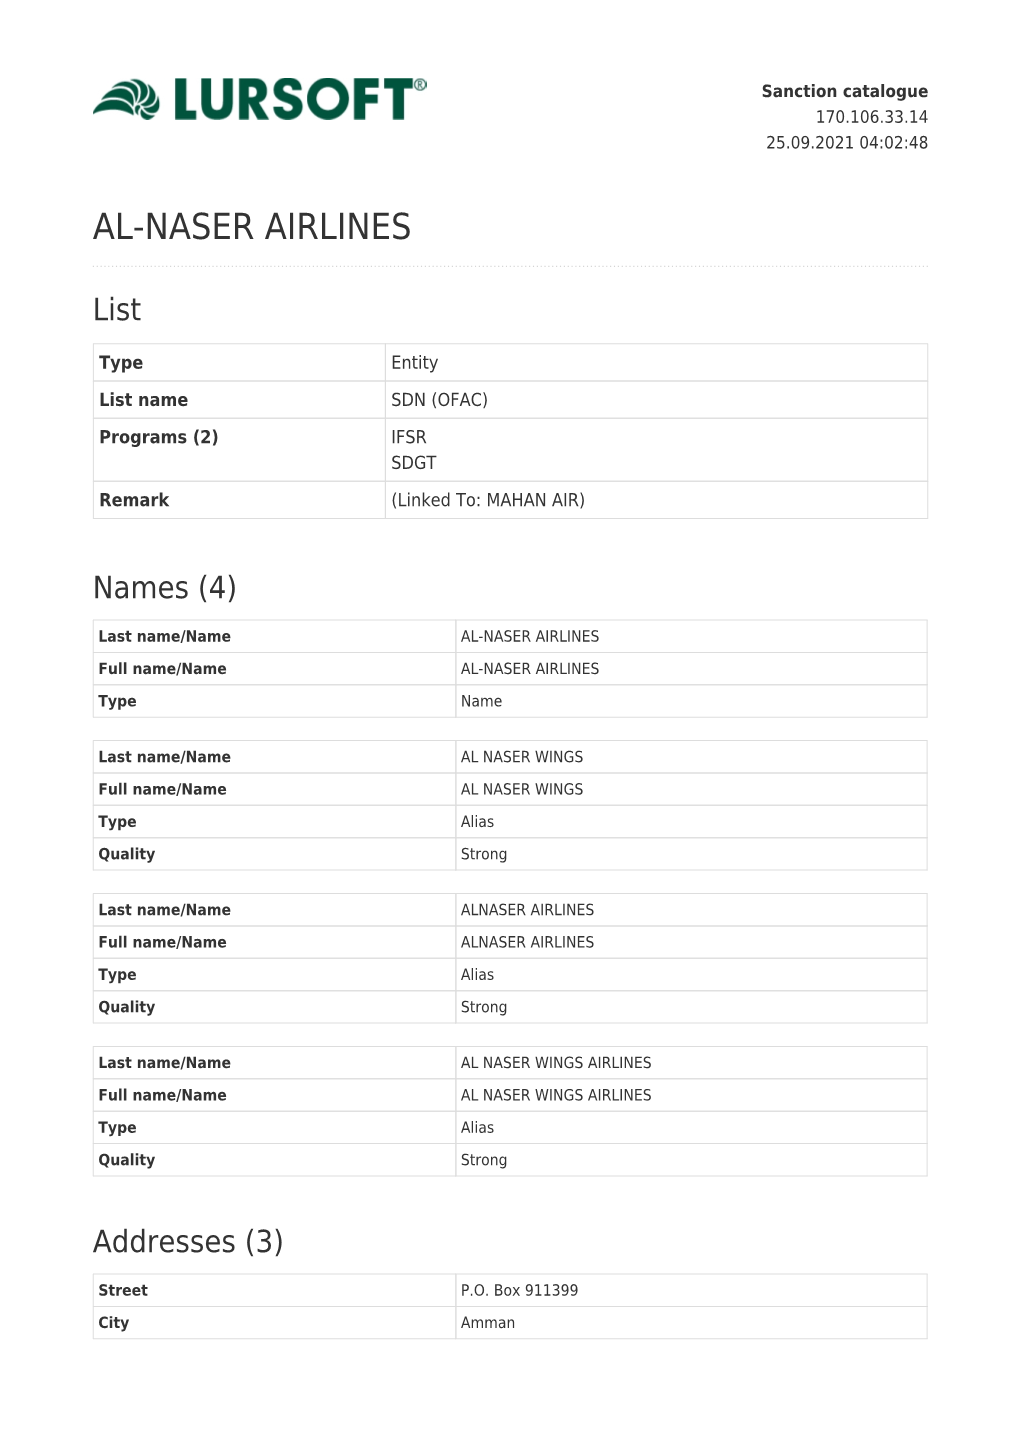 Al-Naser Airlines